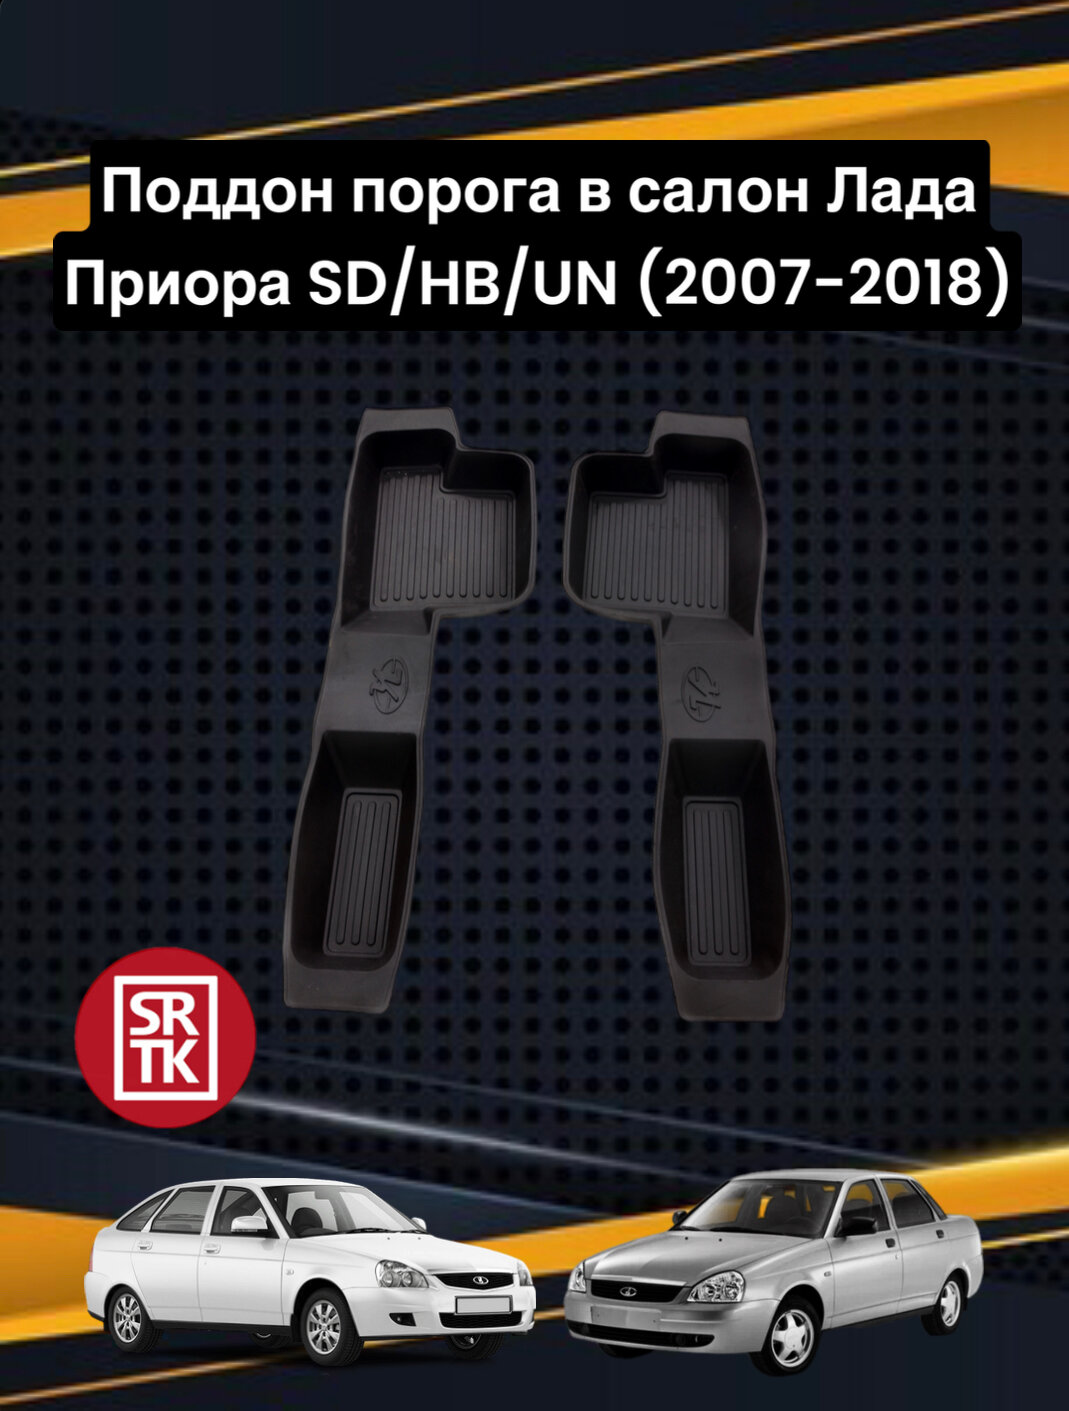 Поддон порога для Лада ВАЗ Приора/Lada Priora SD/HB/UN (2007-2018) SRTK (Саранск) передние